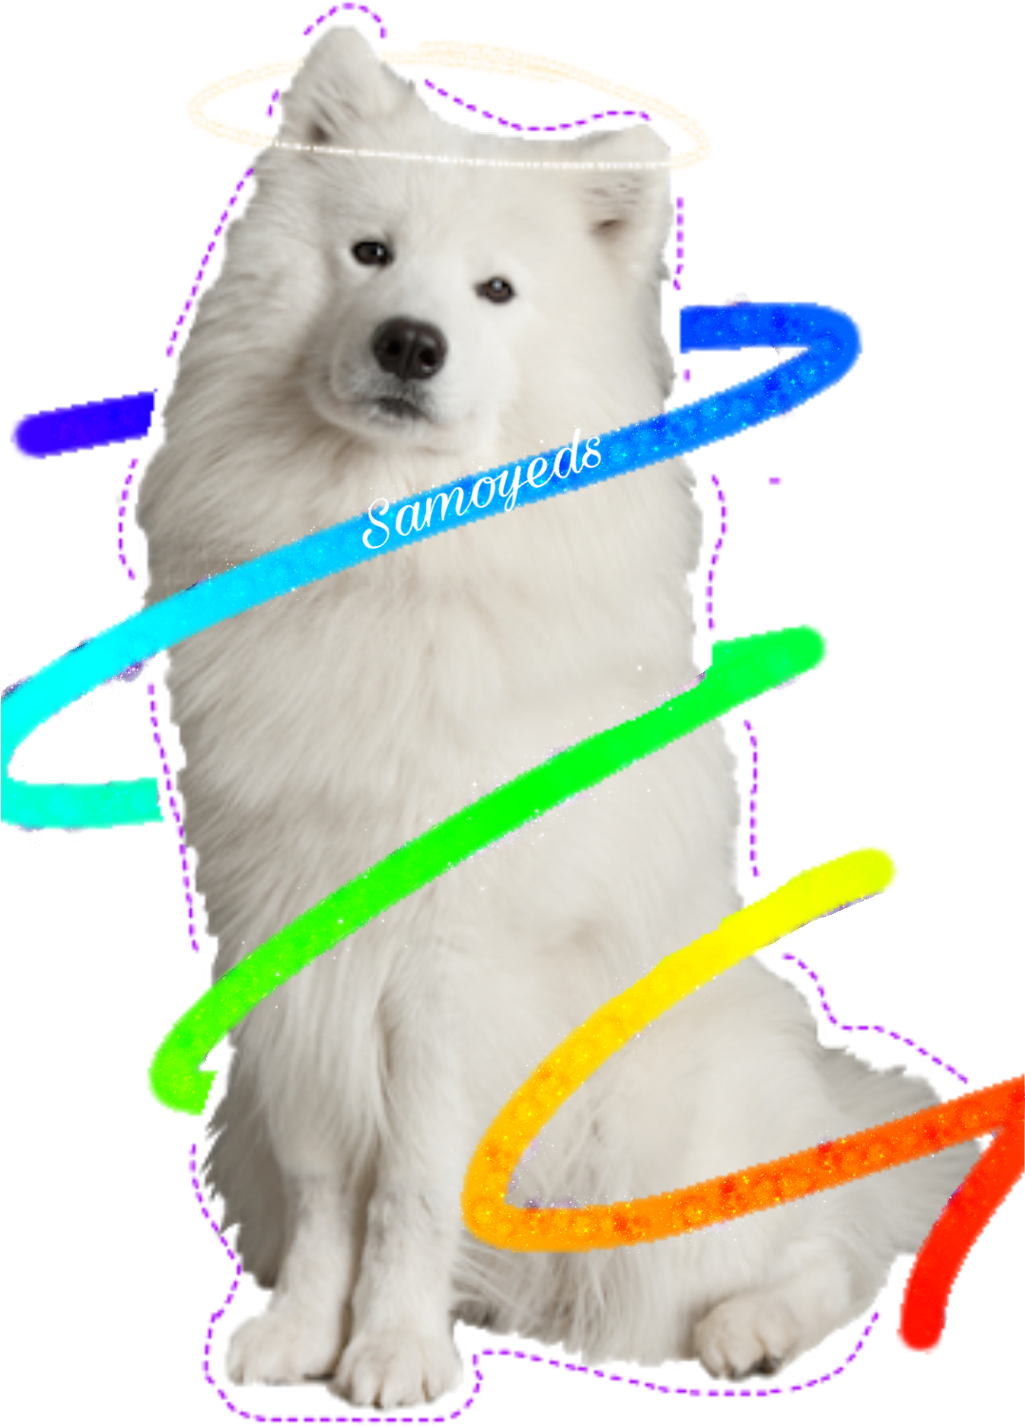 A White Dog With Rainbow Spirals Around It